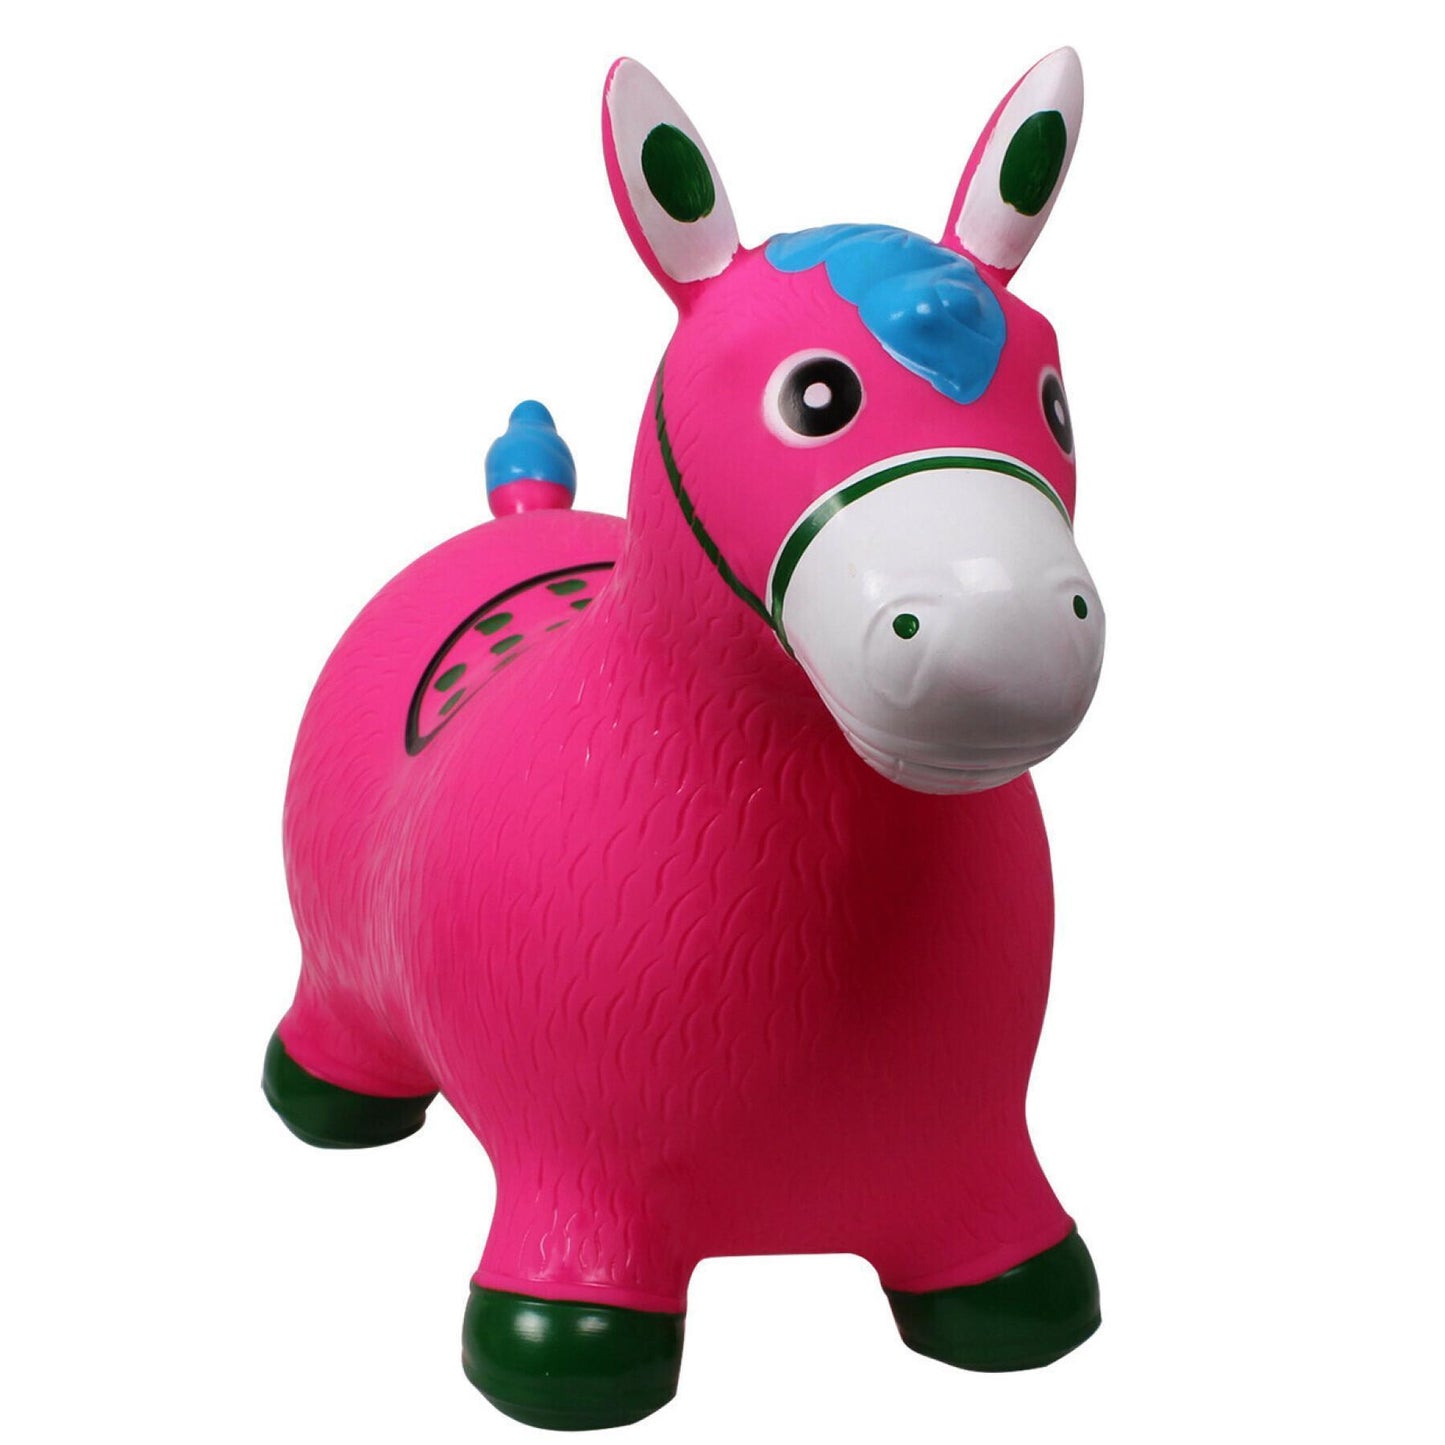 Cavallo giocattolo per bambini | El gaucho store